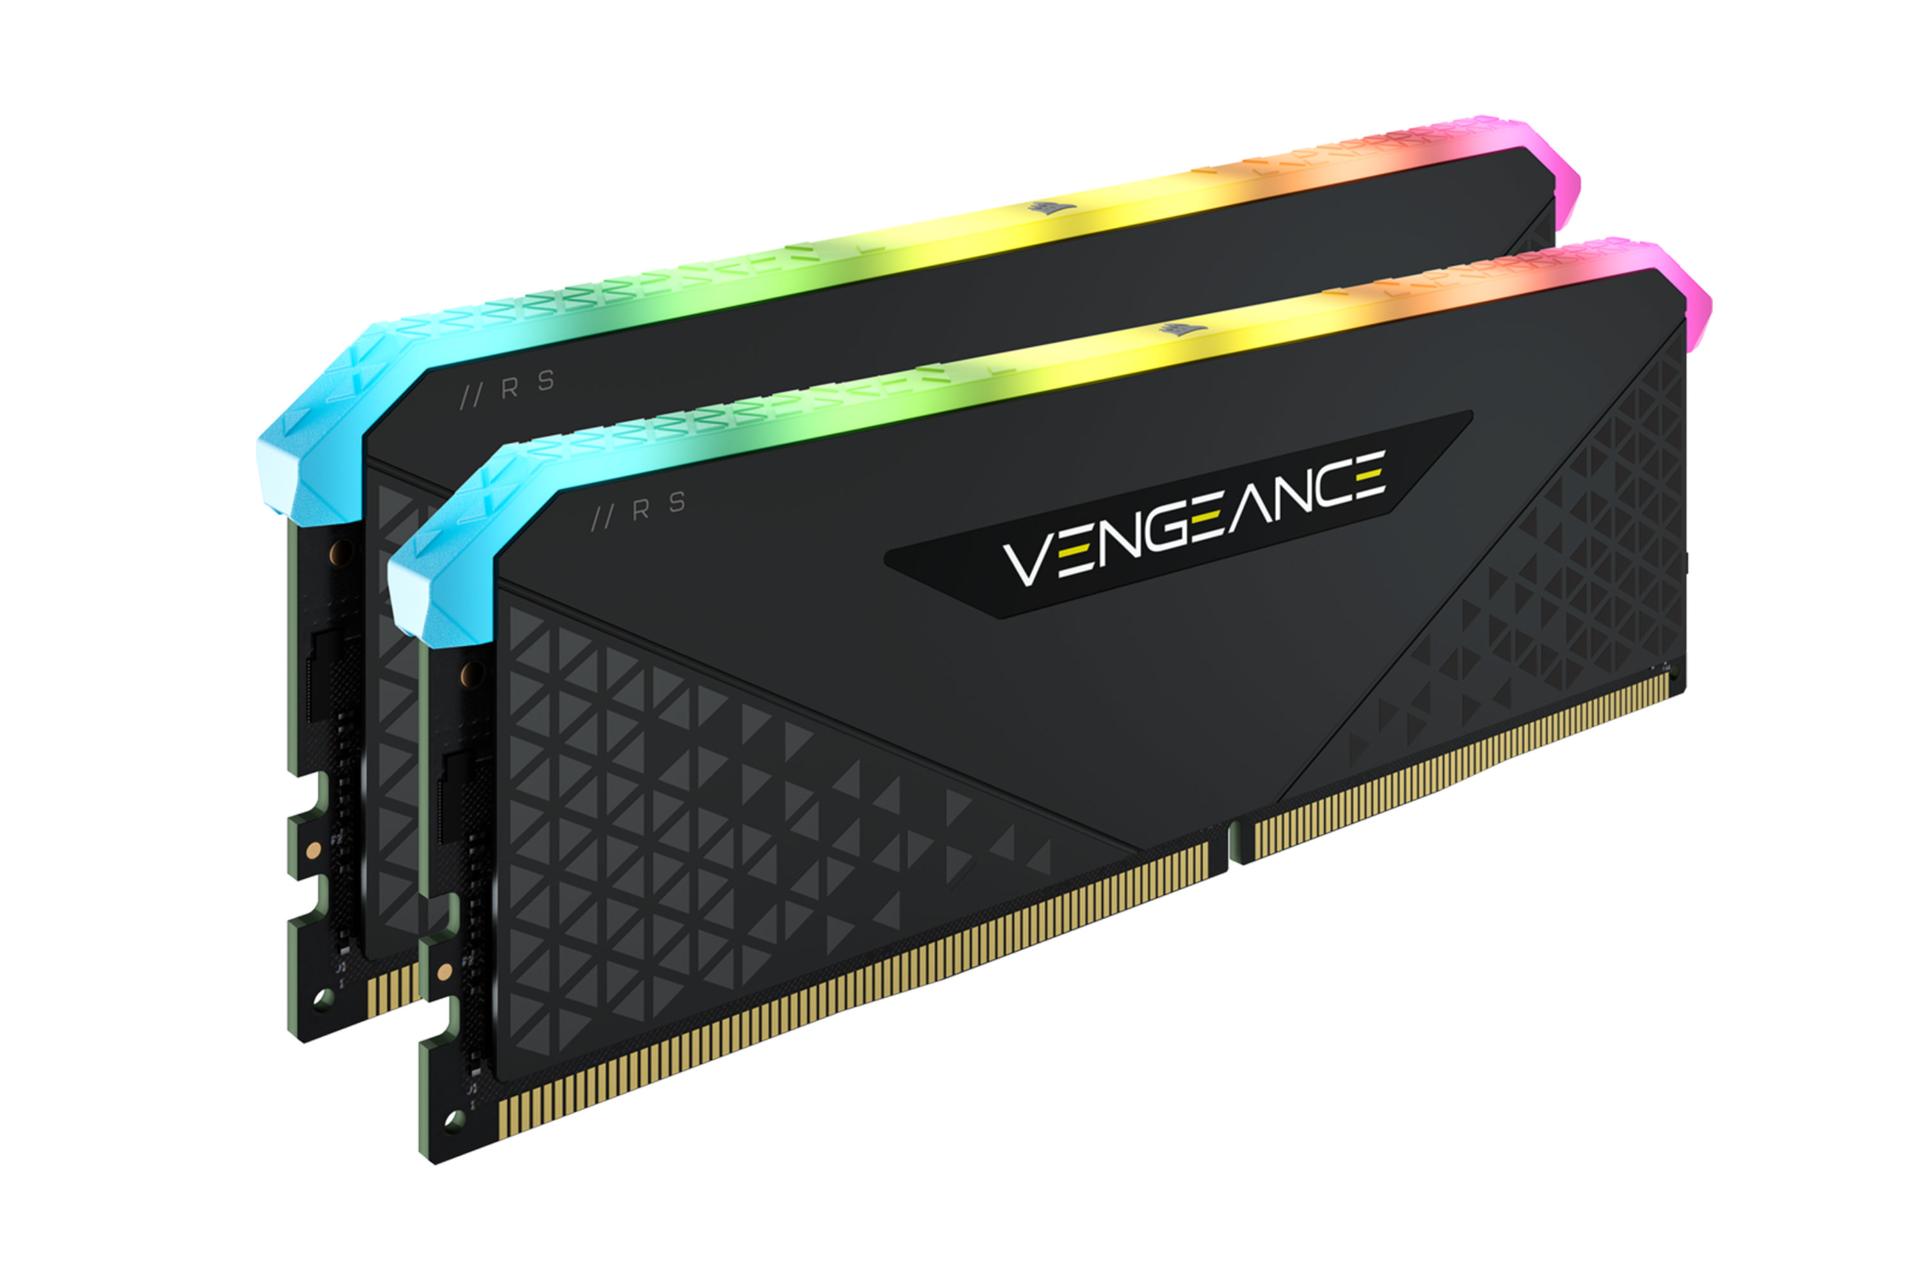 نمای چپ  رم کورسیر VENGEANCE RGB RS ظرفیت 32 گیگابایت (2x16) از نوع DDR4-3200 